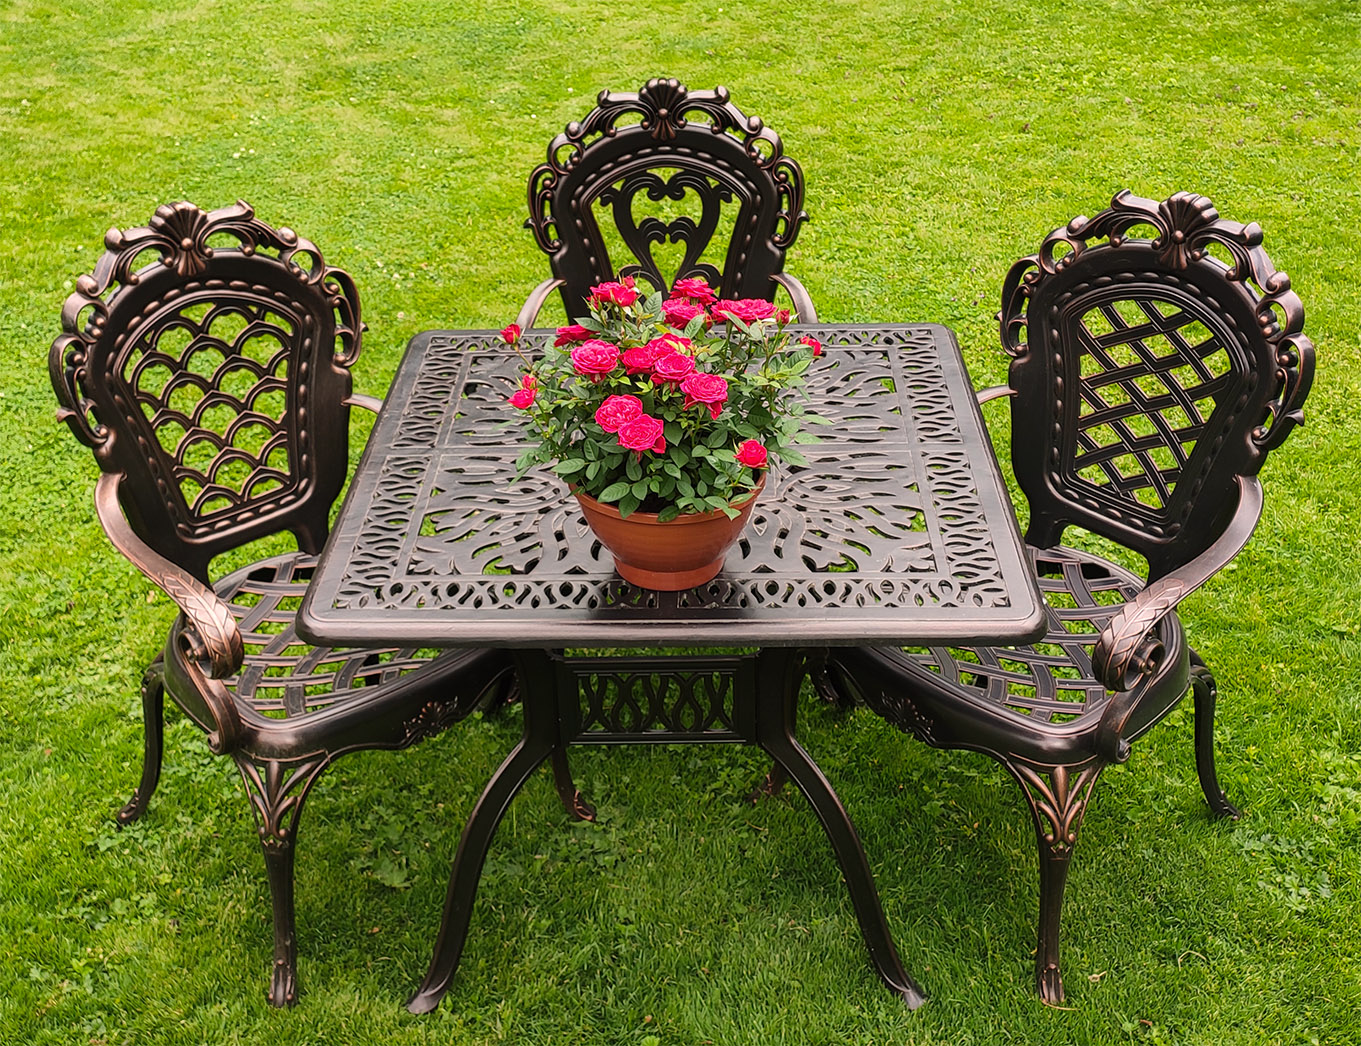 Садовые кресла для дачи из литого алюминия, мебель для пансионатов и летних кафе, чугунная мебель в беседку на дачу, кованый стол с креслами на веранду загородного дома